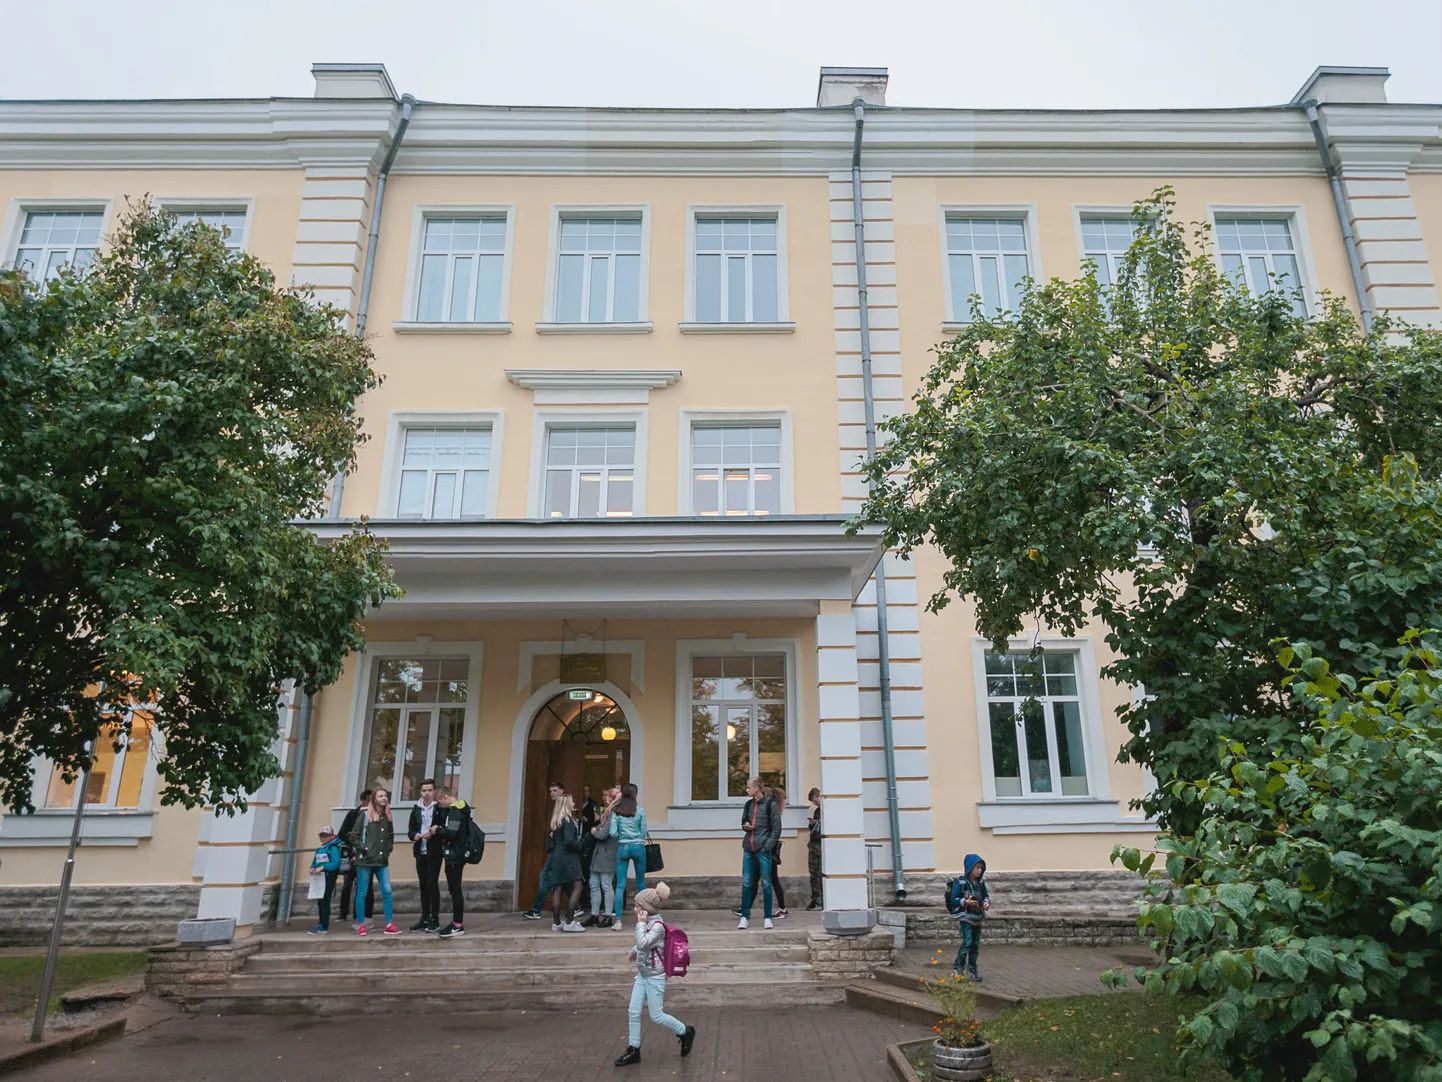 Narva Kesklinna gümnaasiumi õpilased lahkuvad tänavu suvel sellest Aleksandr Puškini tn 29 paiknevast ajaloolisest hoonest, et kahe aasta möödudes pärast hoone ümberehitust siia tagasi tulla.